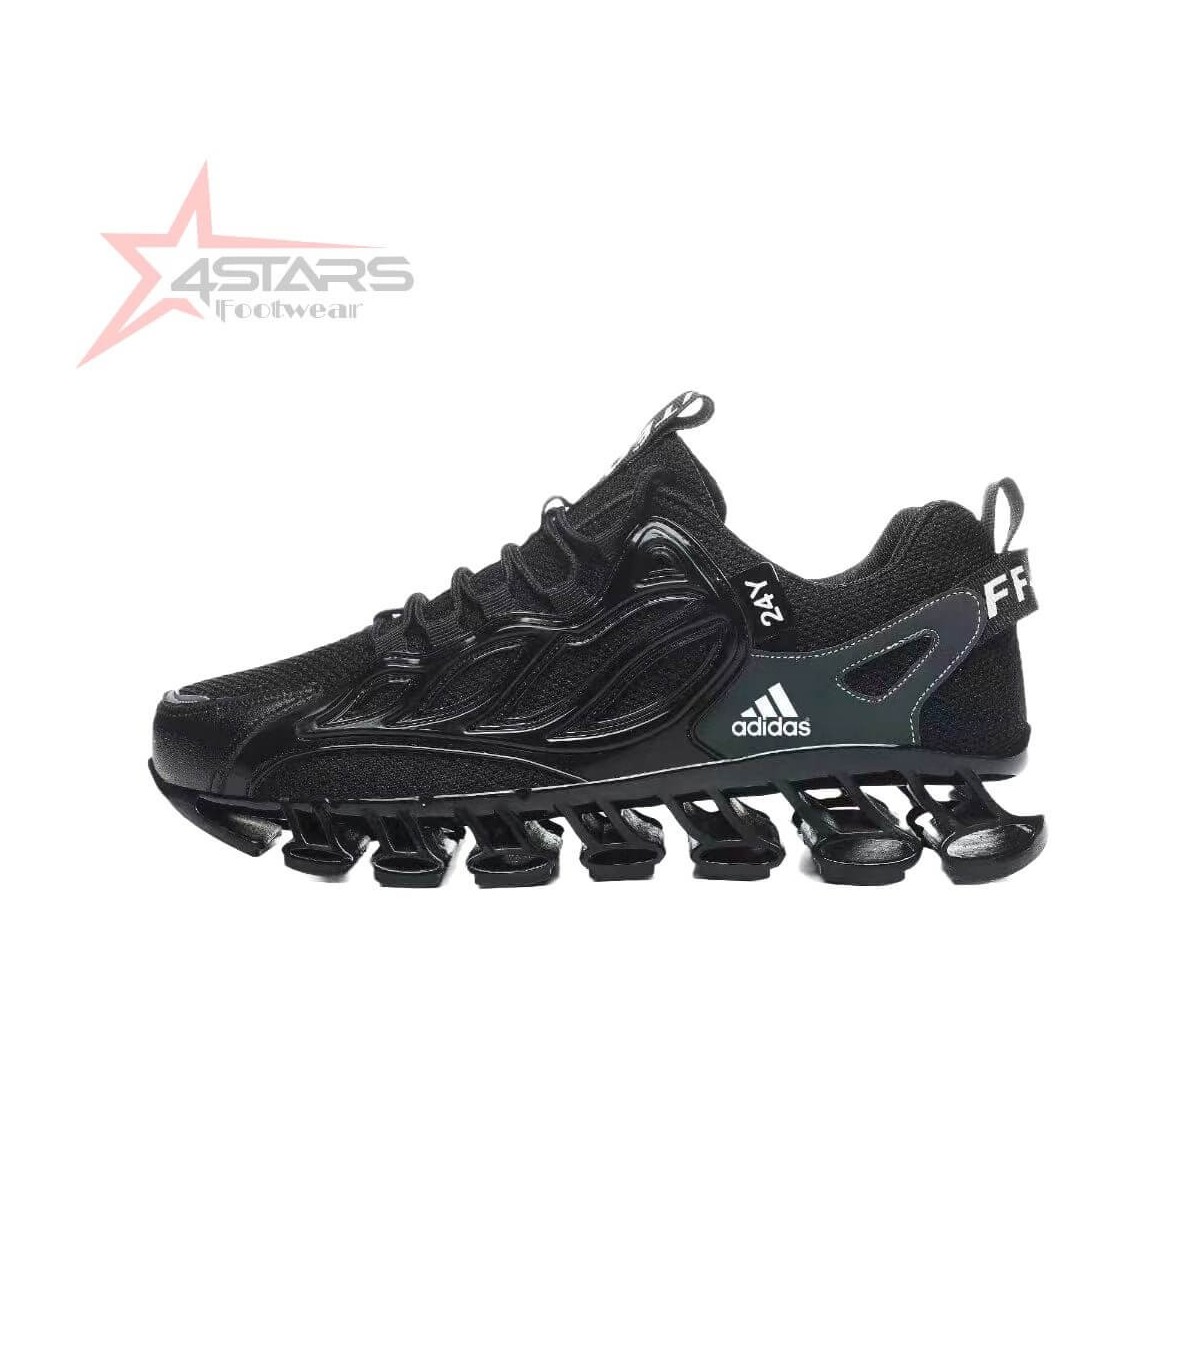 Adidas Blade Sneakers - Black